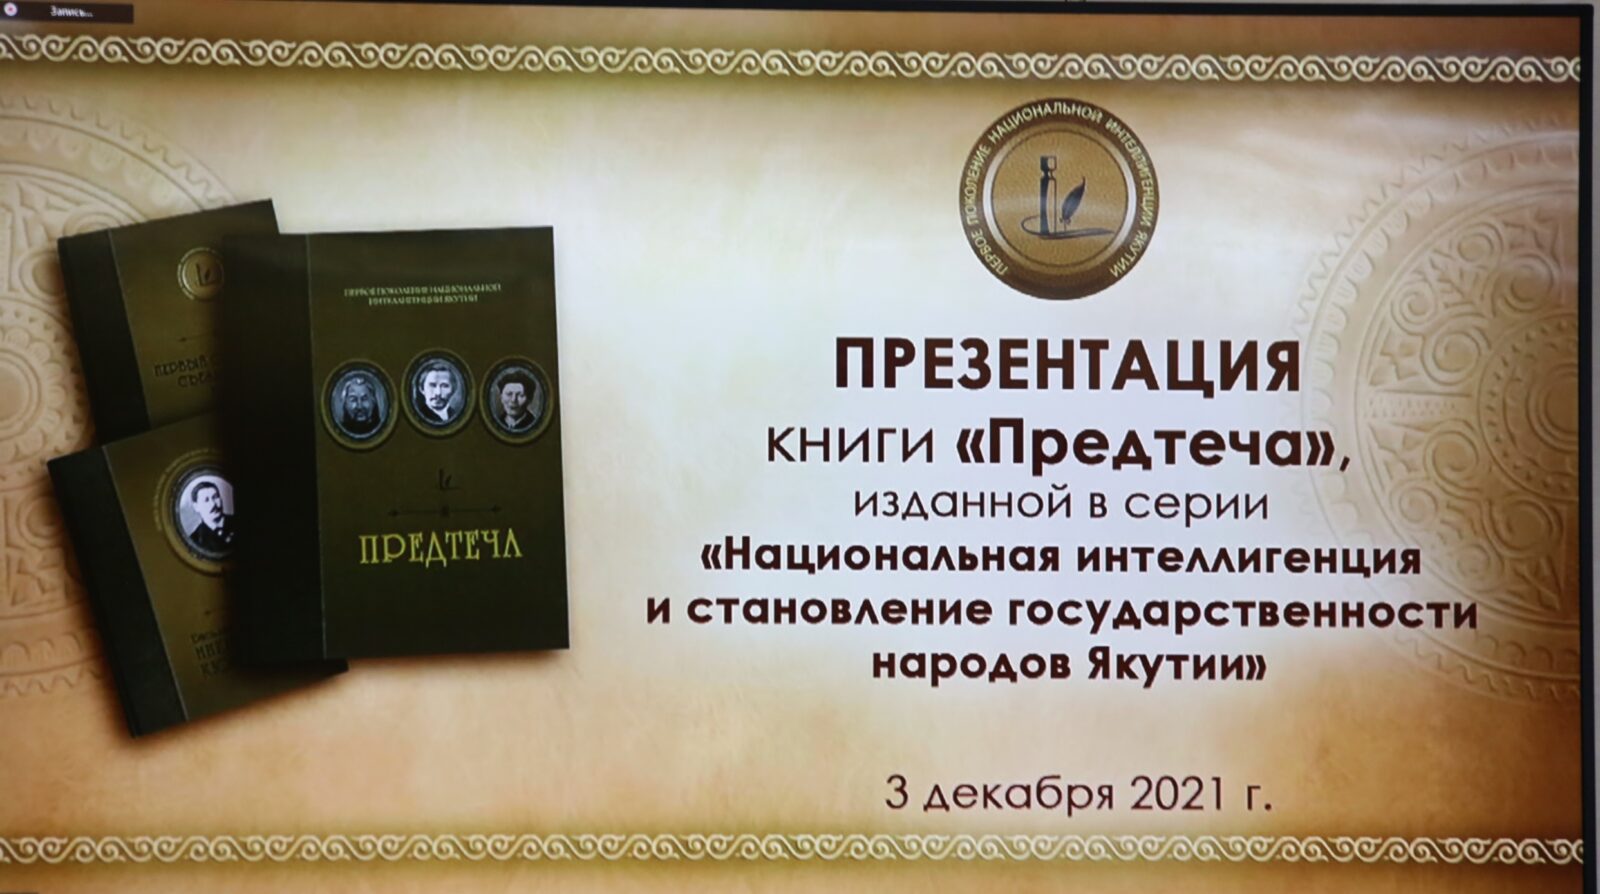 "Предтеча" - презентация книги о трех великих тойонах имперской Якутии